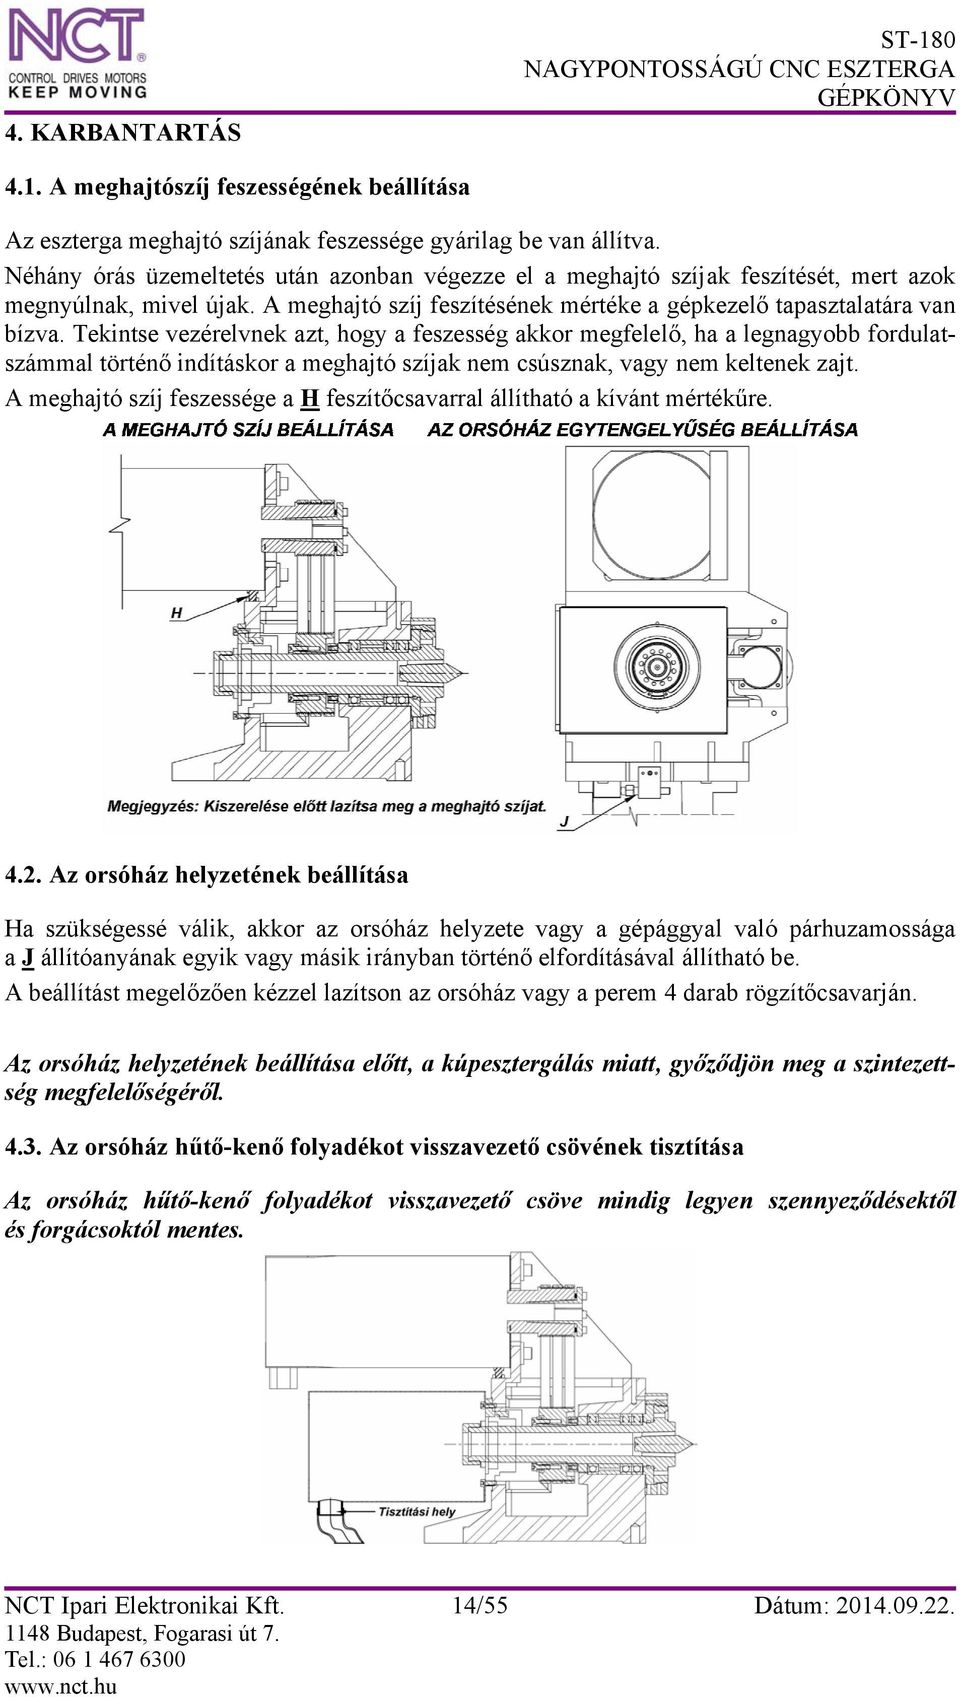 ST-180 NAGYPONTOSSÁGÚ CNC ESZTERGA - PDF Free Download